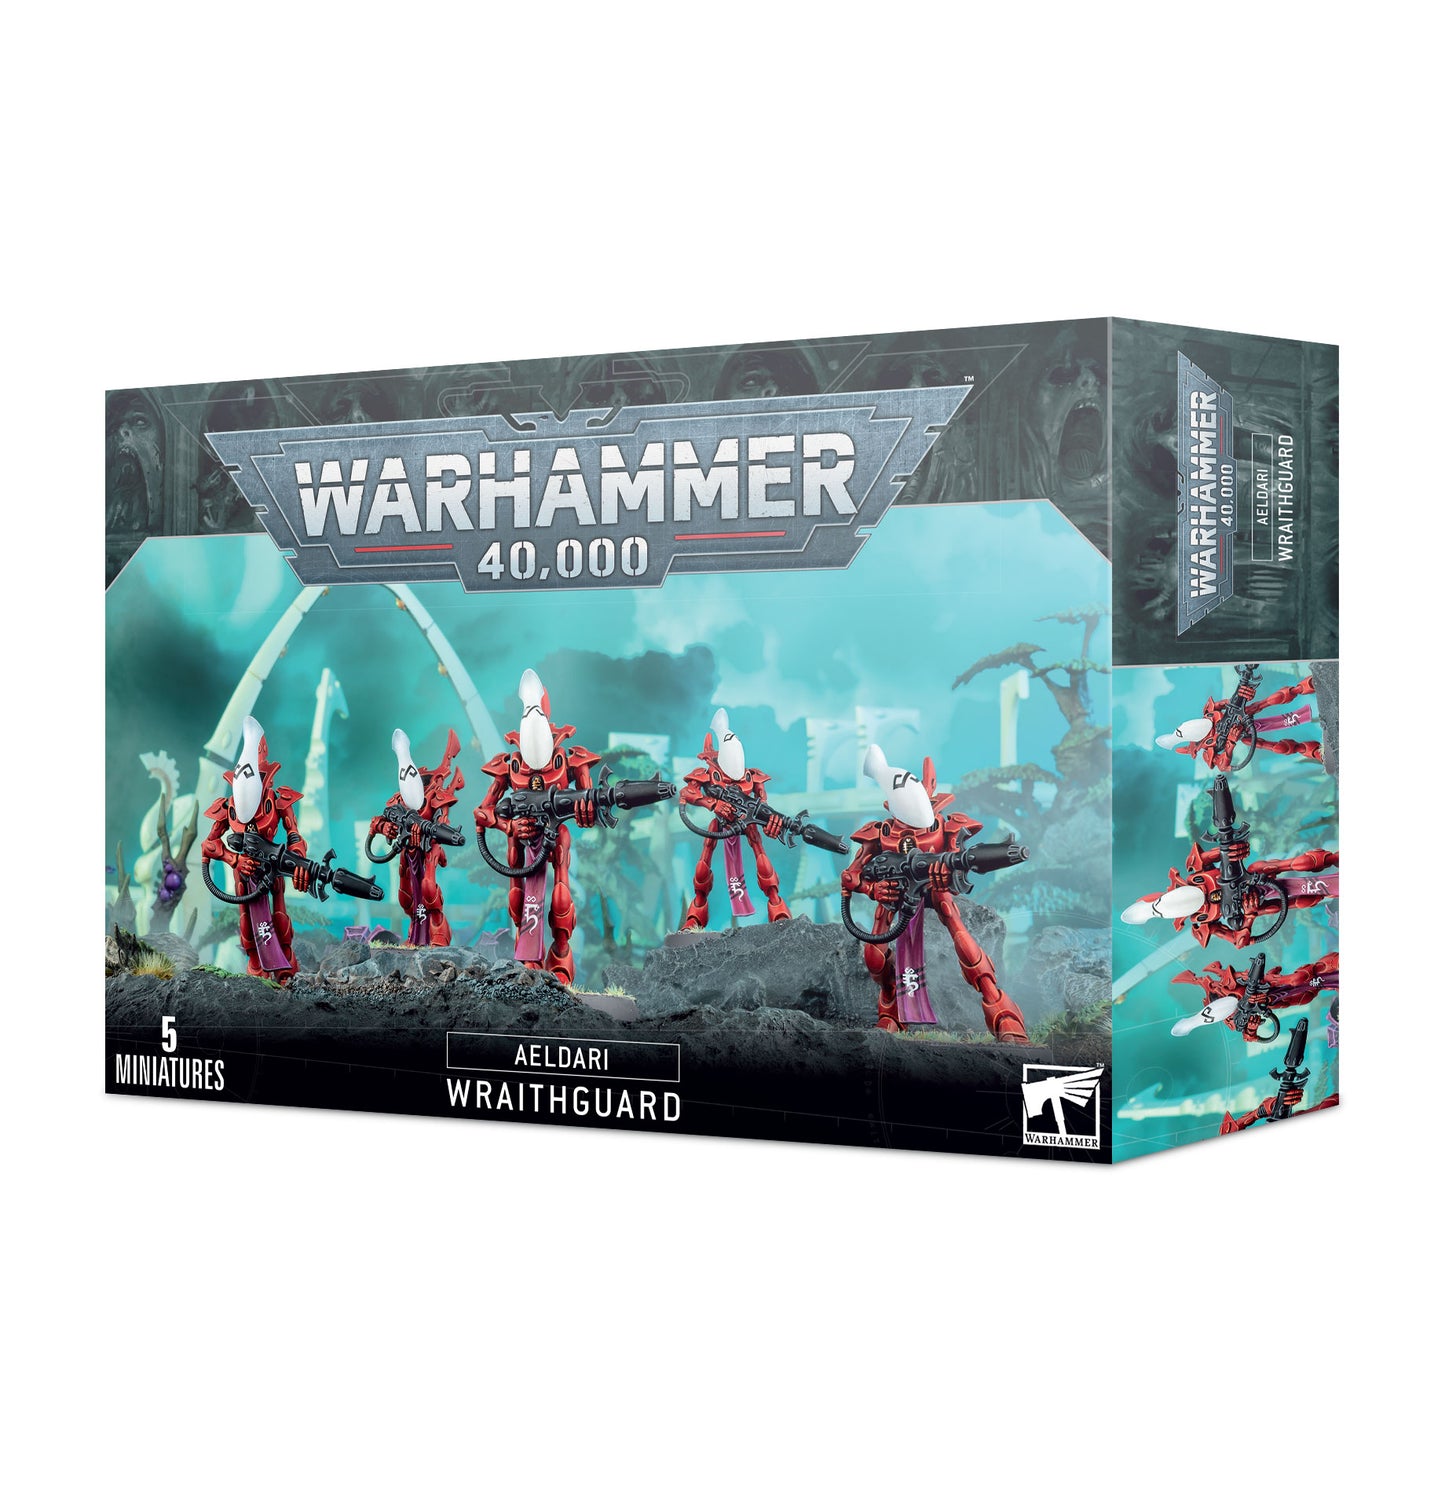 Aeldari Wraithguard, Warhammer 40,000